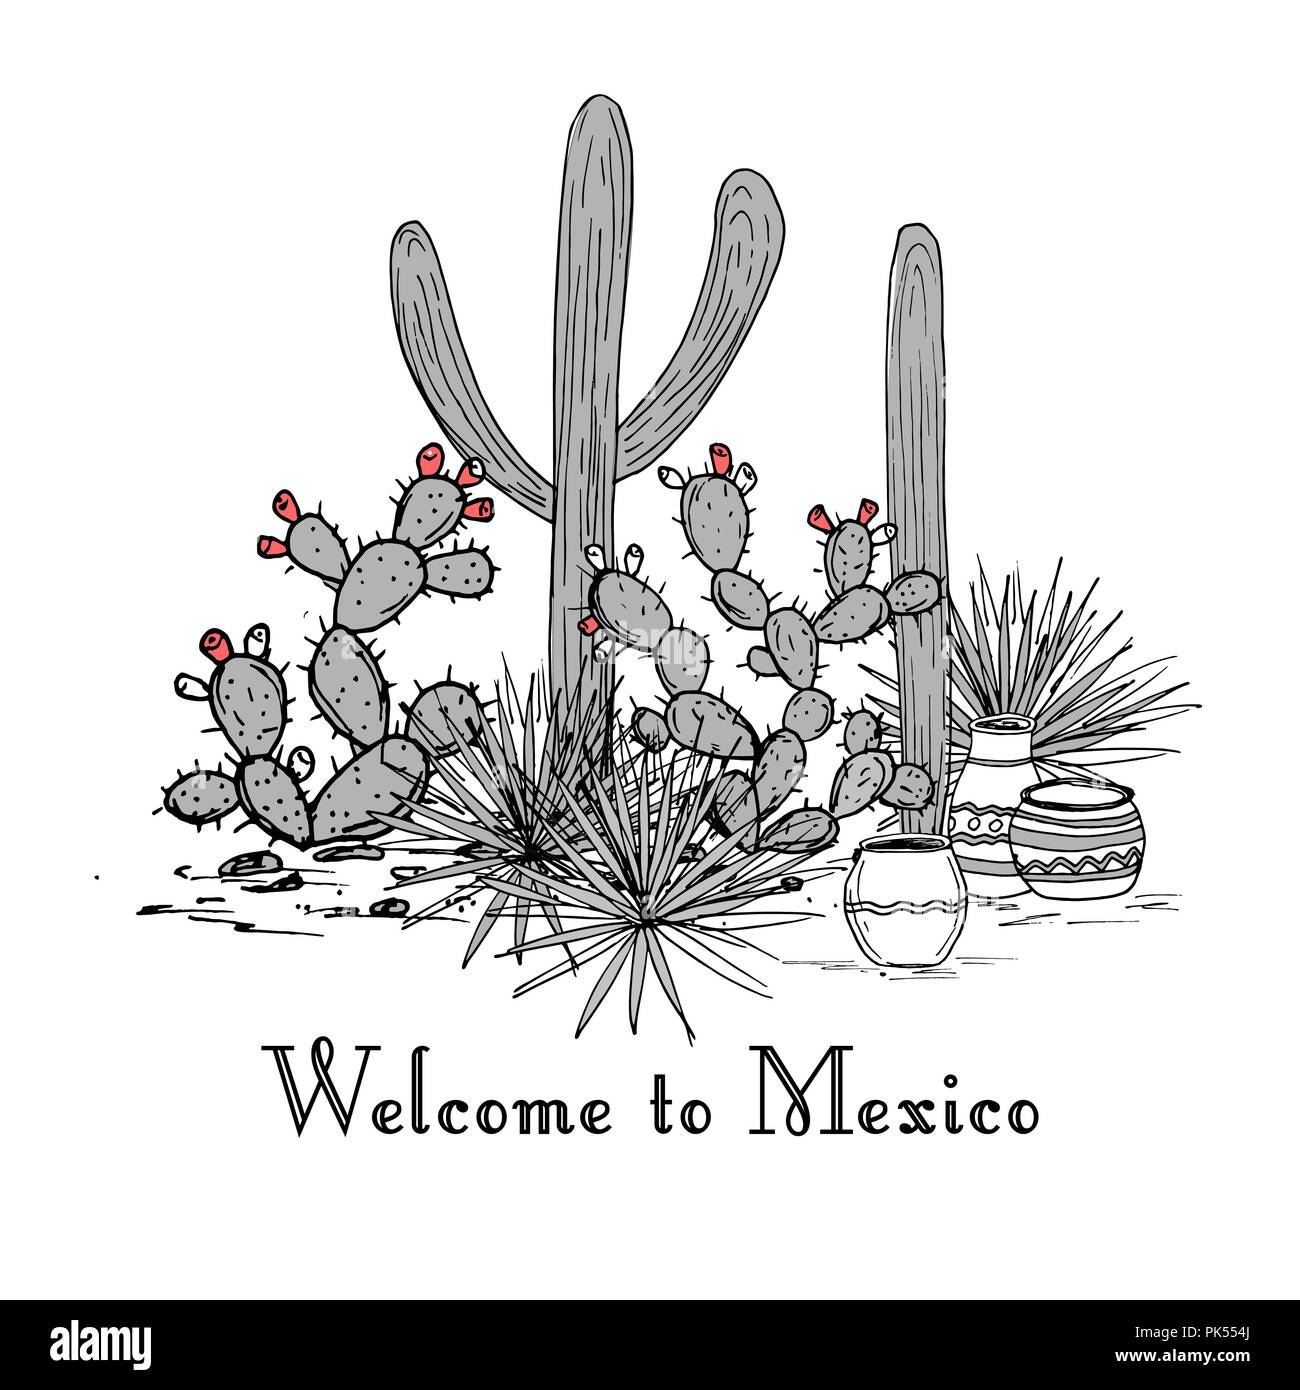 Kakteen Gruppe. Feigenkakteen, Agaven, und Saguaro. Nach Mexiko Karte Willkommen. Vector Illustration. Berge im Hintergrund Stock Vektor